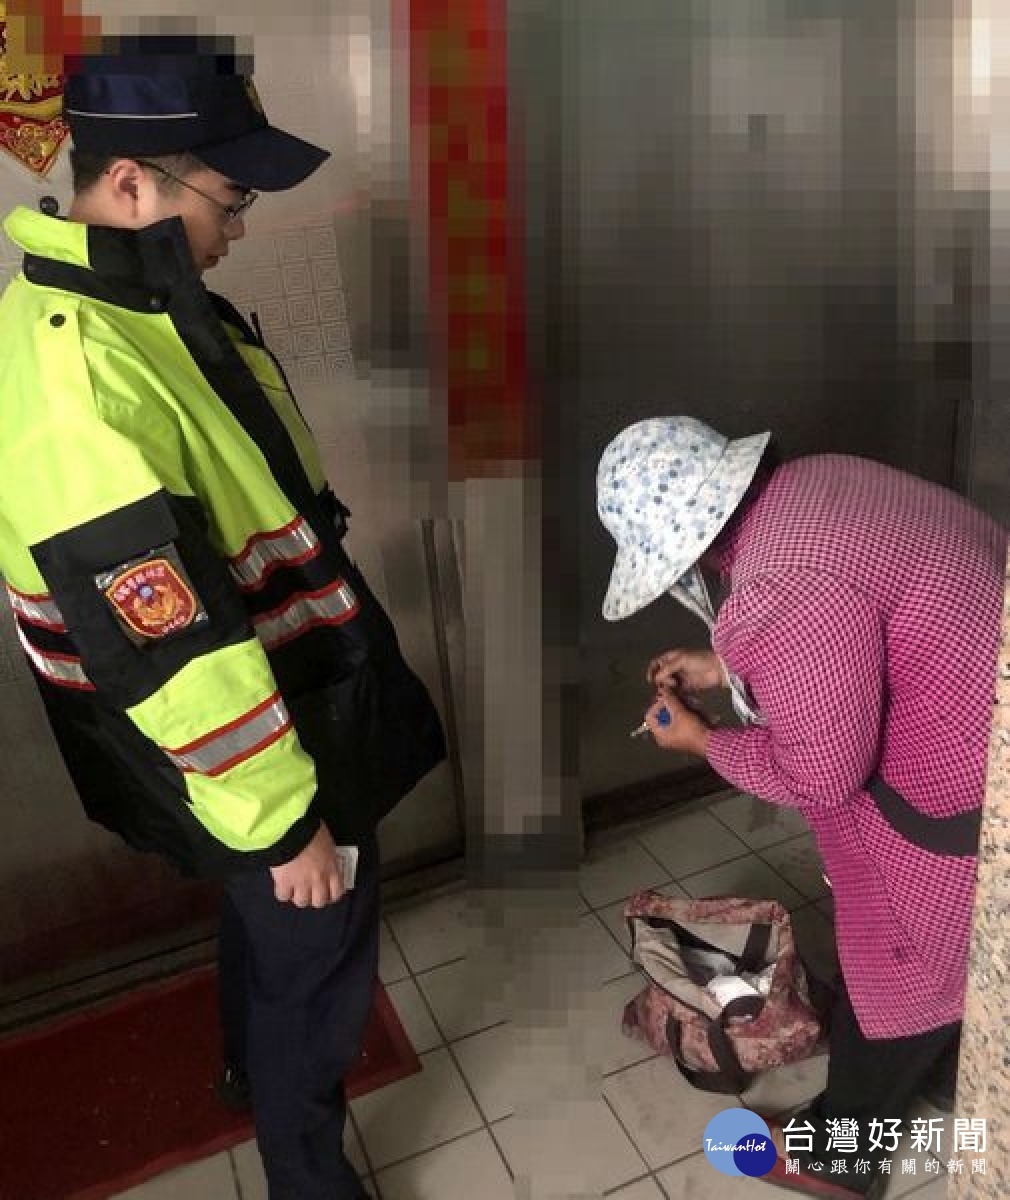 北港所警員郭耀星、歐全裕熱心協助迷途老婦平安返家，積極為民服務的精神亦獲社區民眾的肯定與讚許。